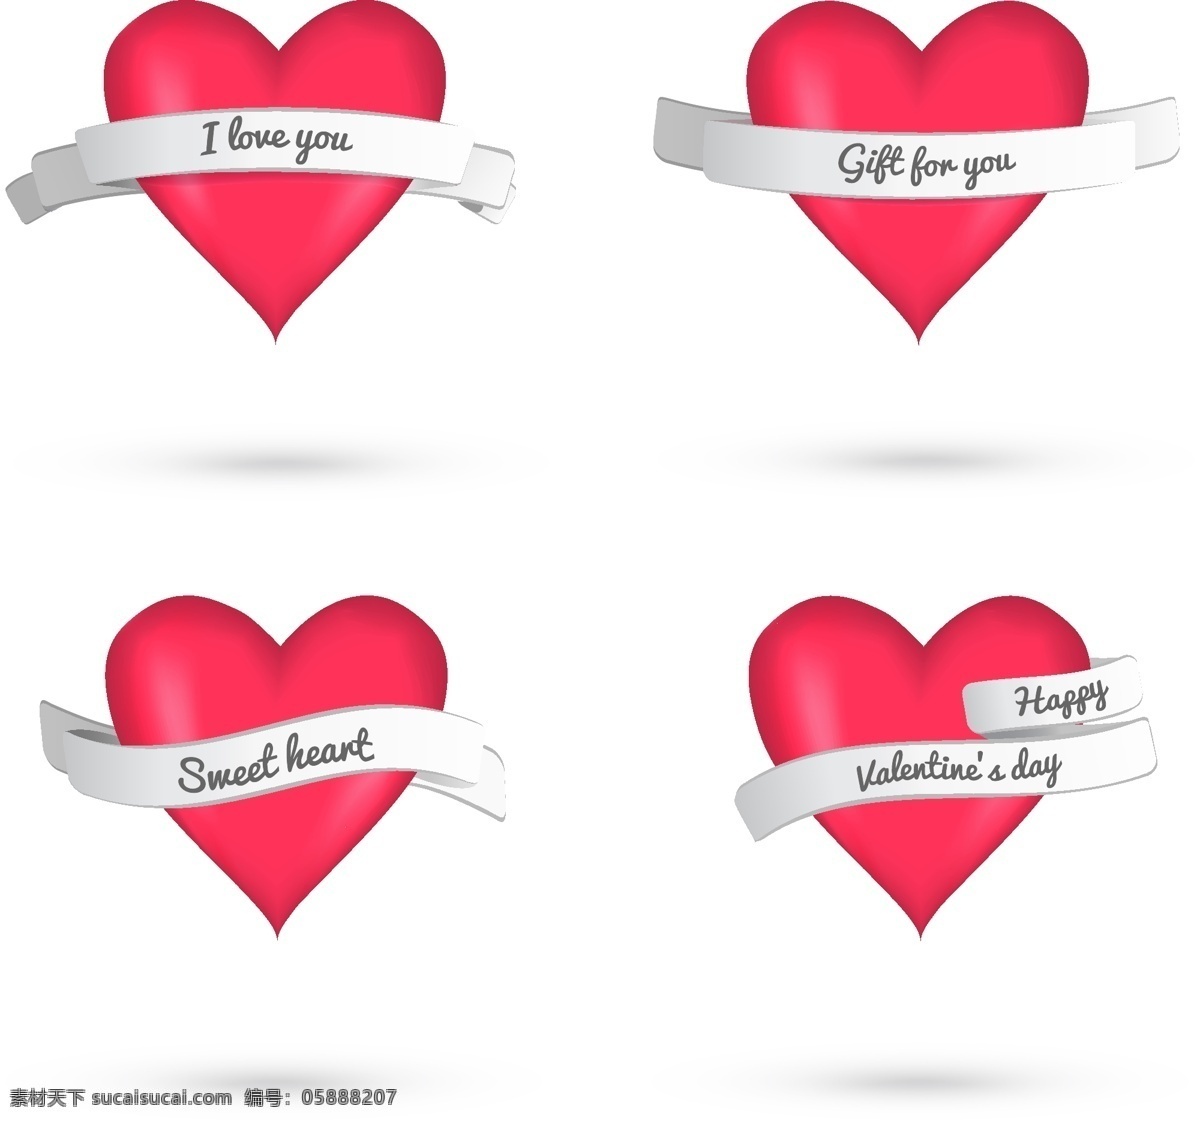 浪漫 情人节 爱心 标签 矢量图 爱心标签 浪漫情人节 情人节标签 丝带 水晶红心 节日素材 其他节日